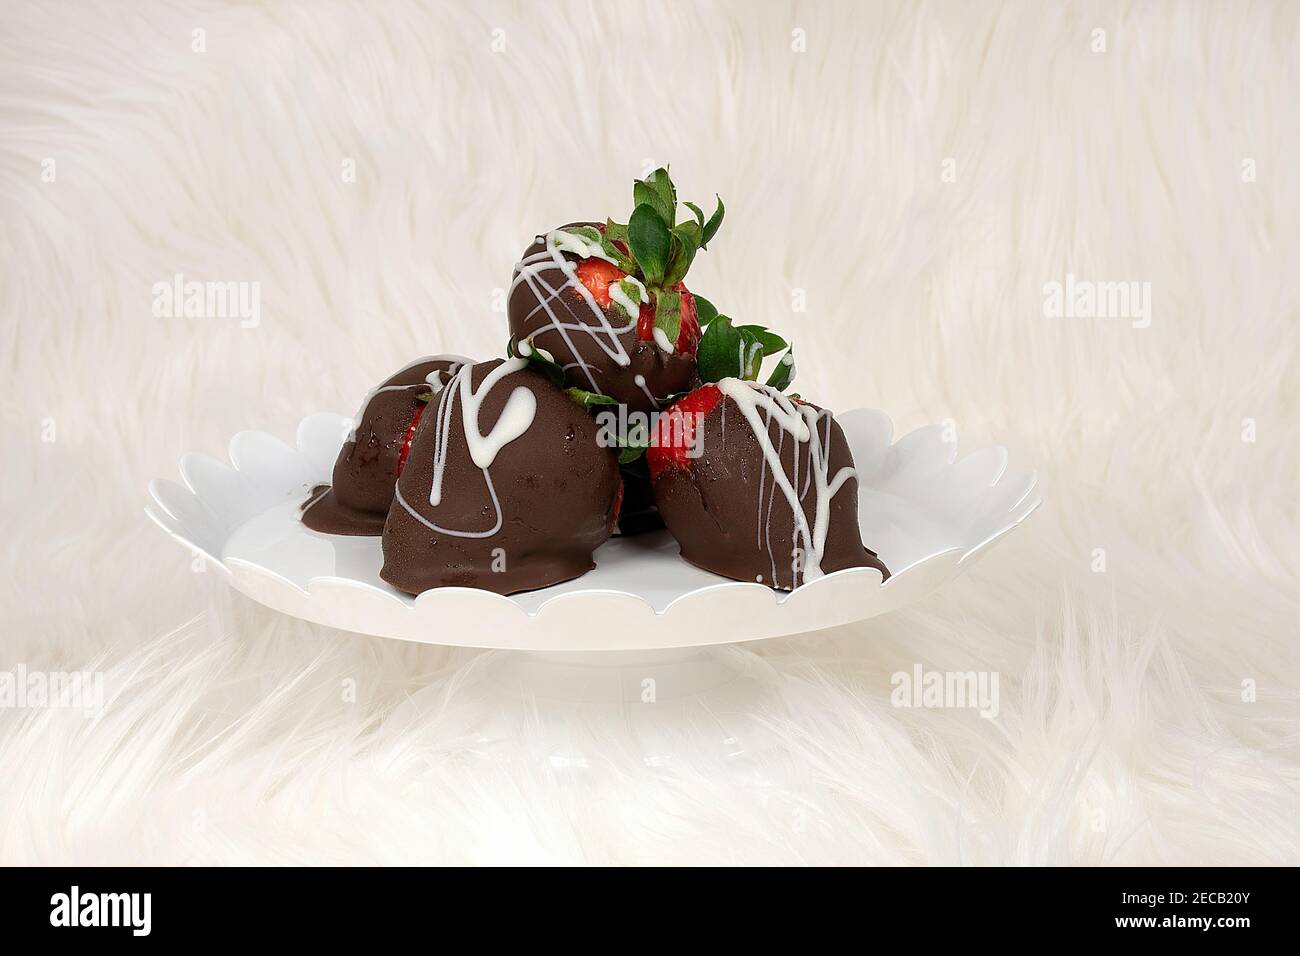 fraises enrobées de chocolat sur une assiette et une fourrure blanches Banque D'Images